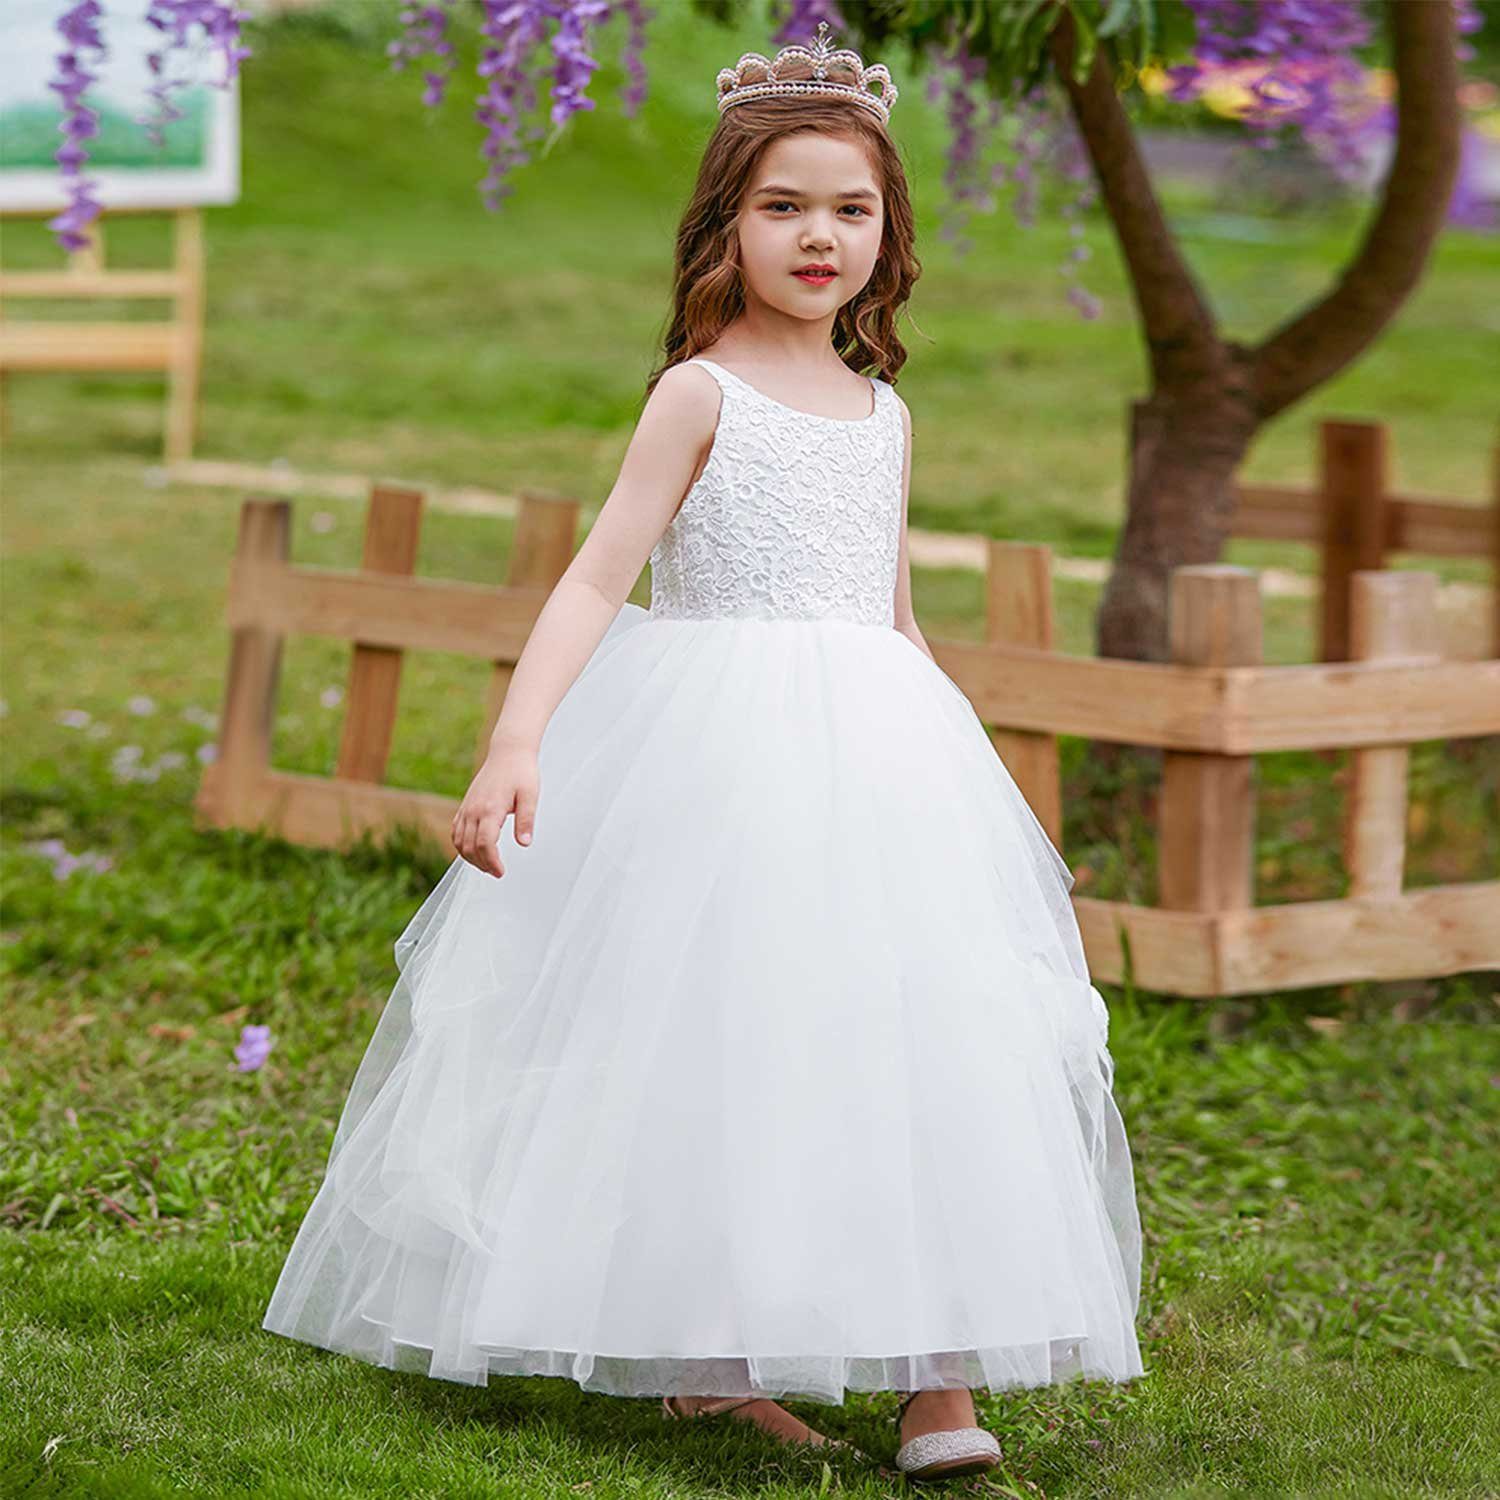 Daisred Partykleid Mädchenkleider Prinzessin Kleidung Kleider Weiß Performance